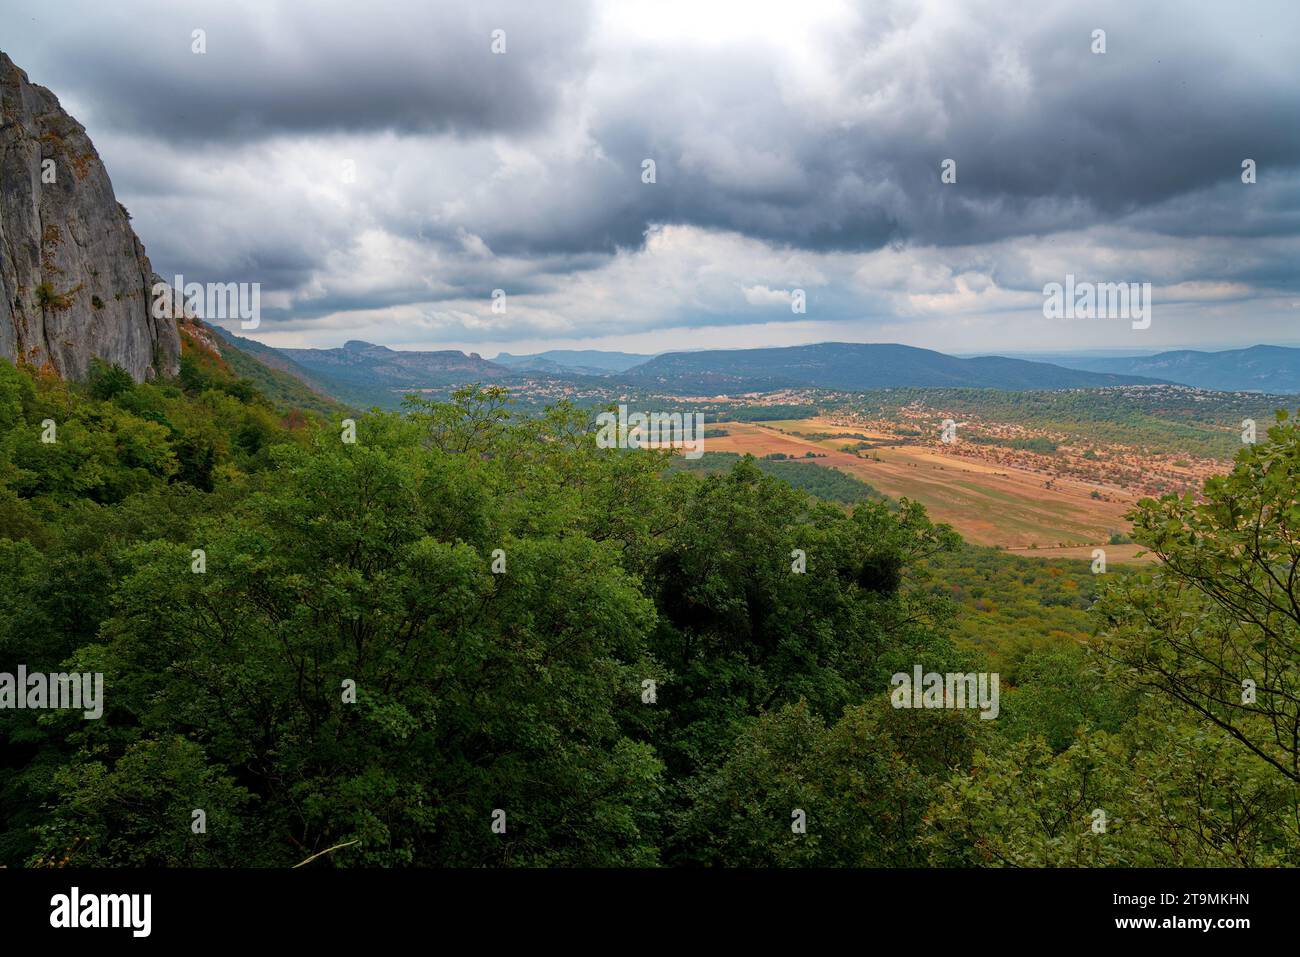 paysage de la sainte baume avec vue sur la plaine du plau d'aups et sur le sanctuaire de sainte marie madeleine Foto Stock